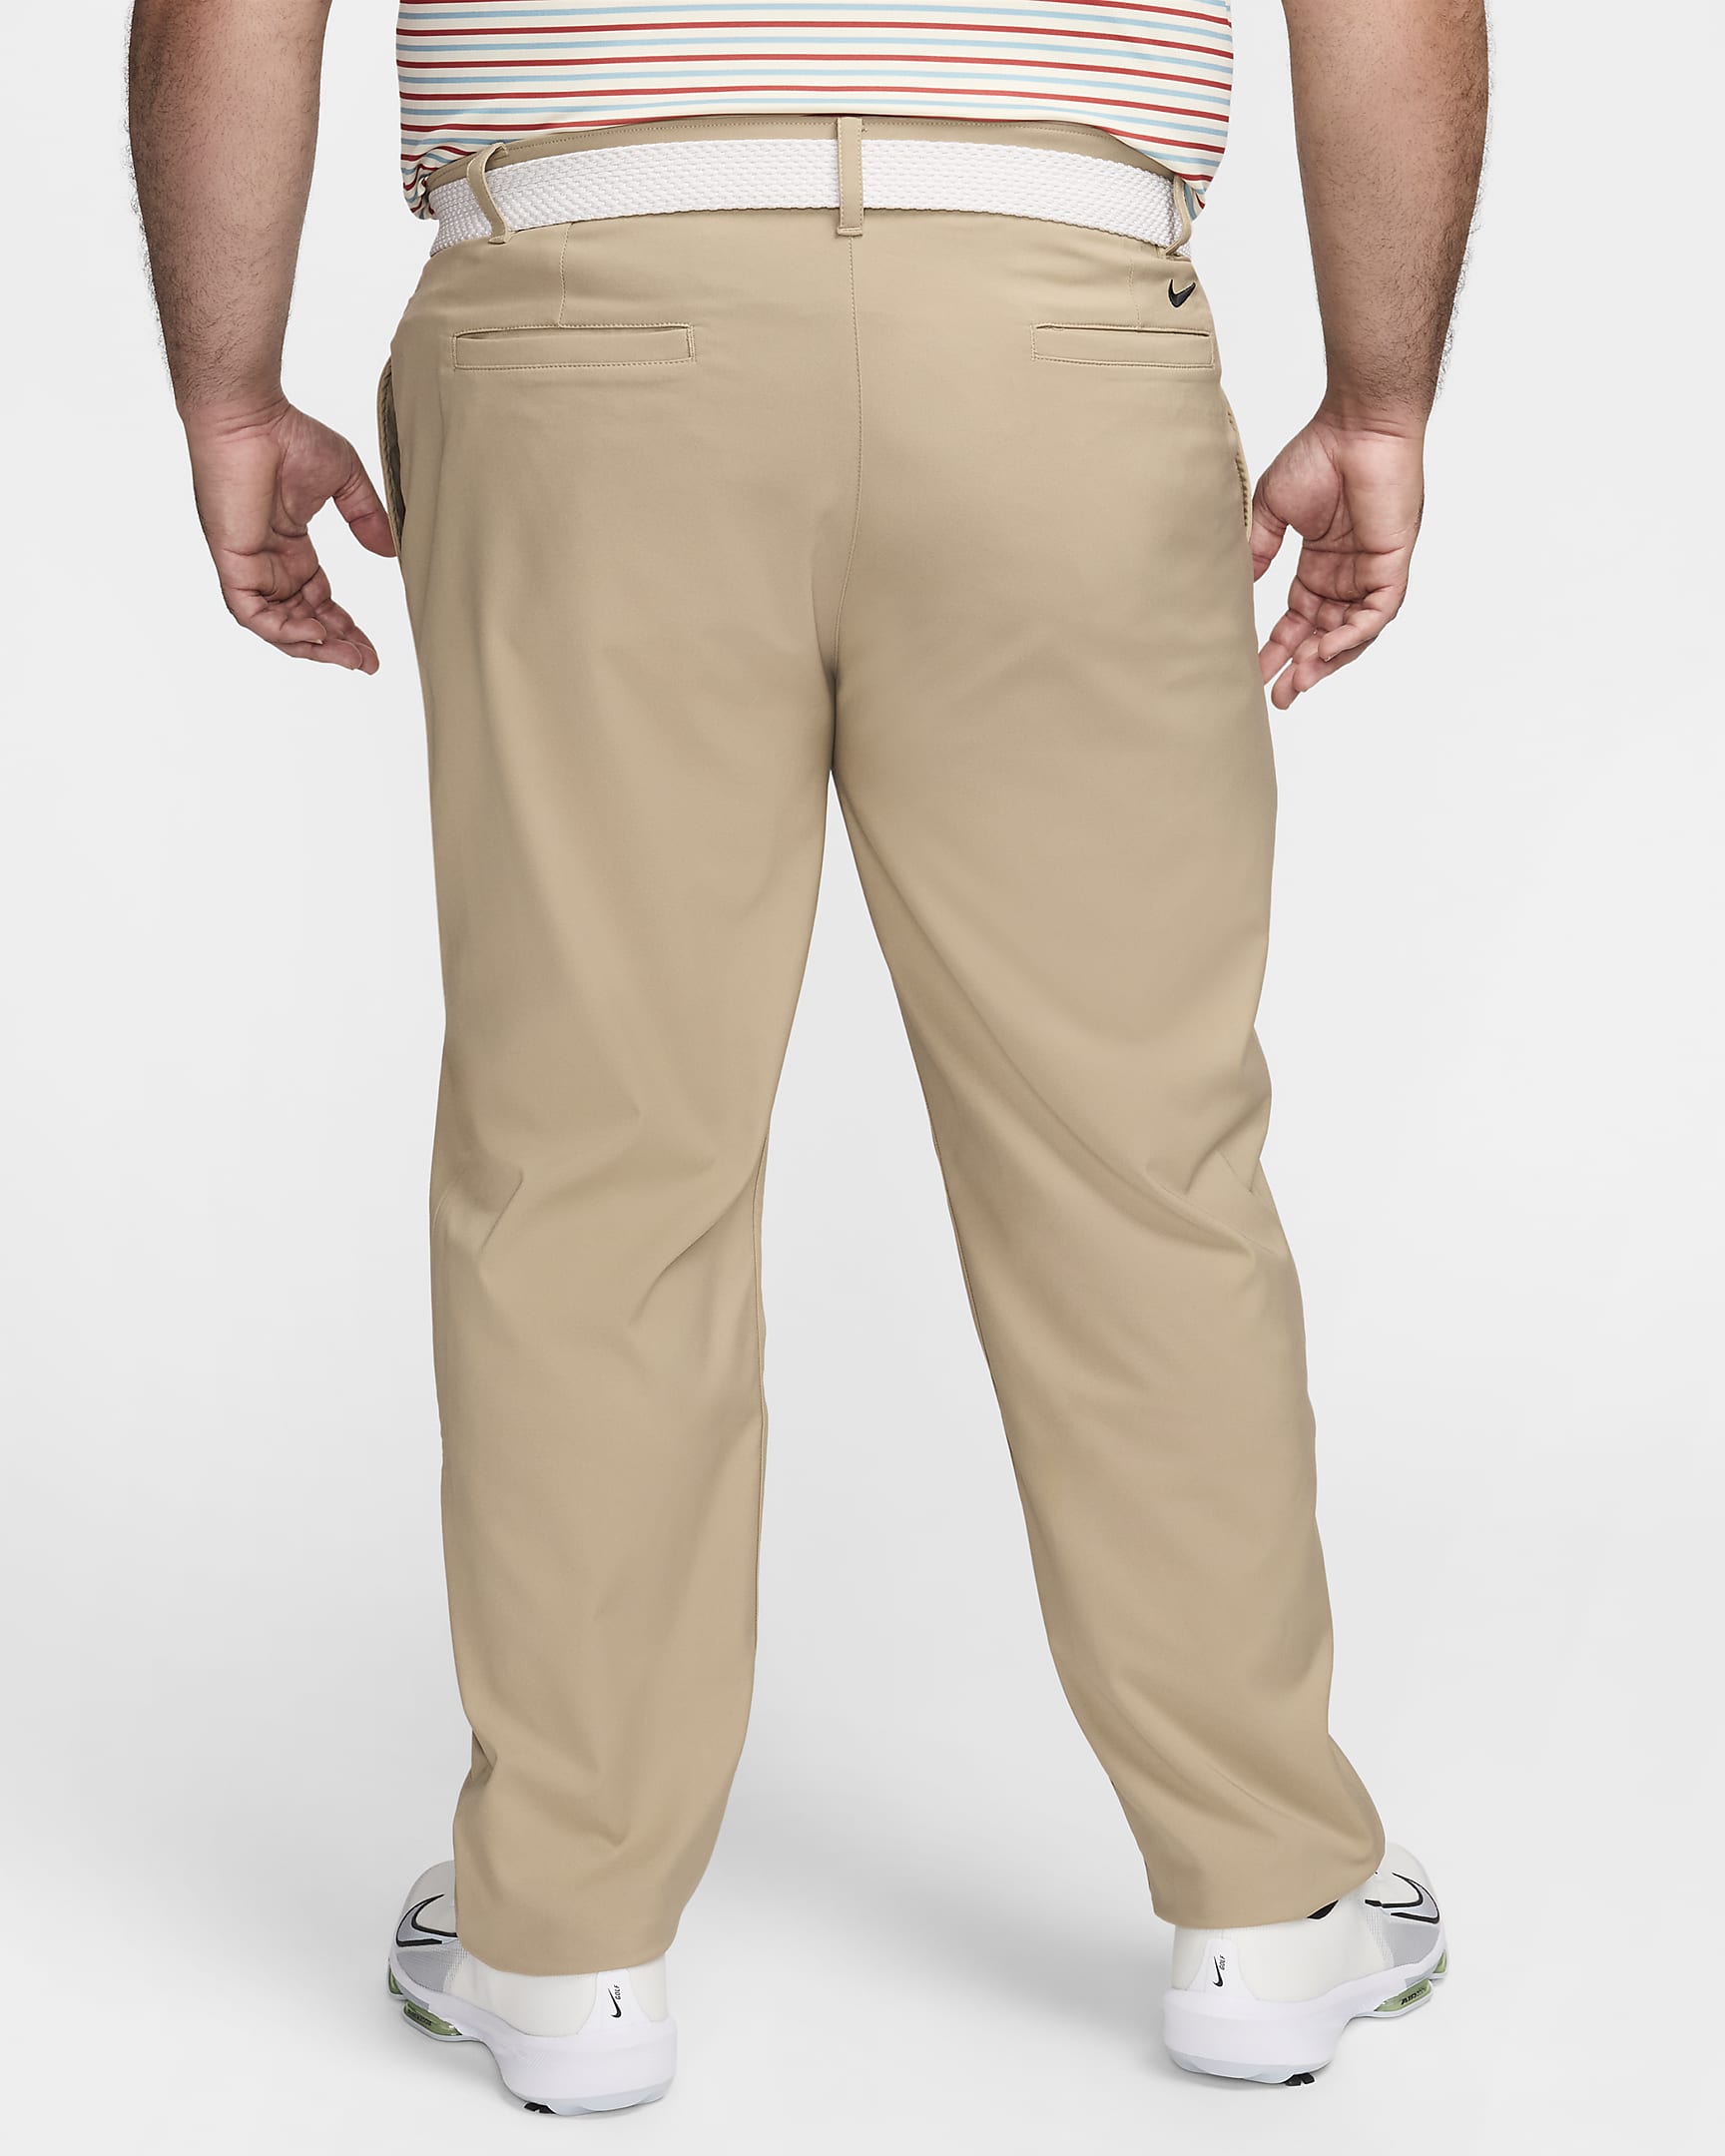 Nike Dri-FIT Victory Men's Golf Trousers - Khaki/Black